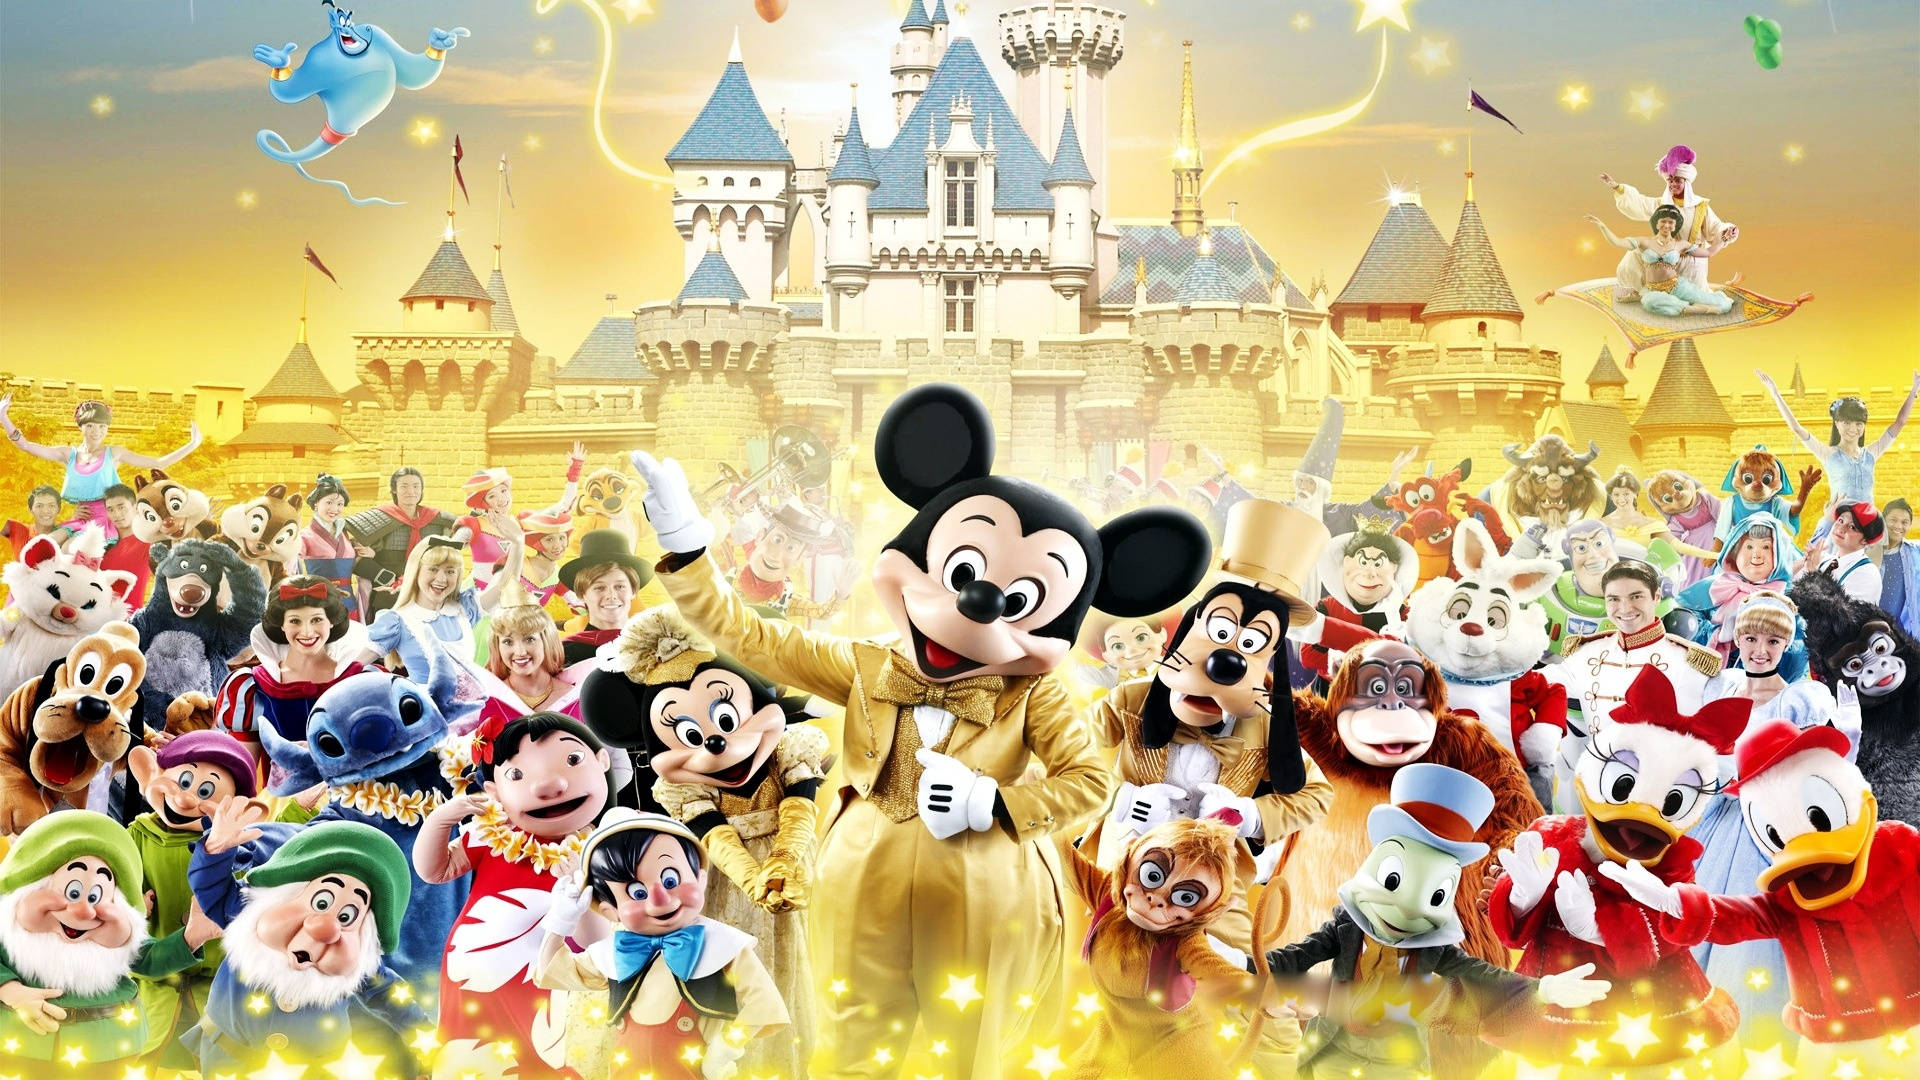 Disney 1920x1080 HD Disney Mascots And Castle Wallpaper